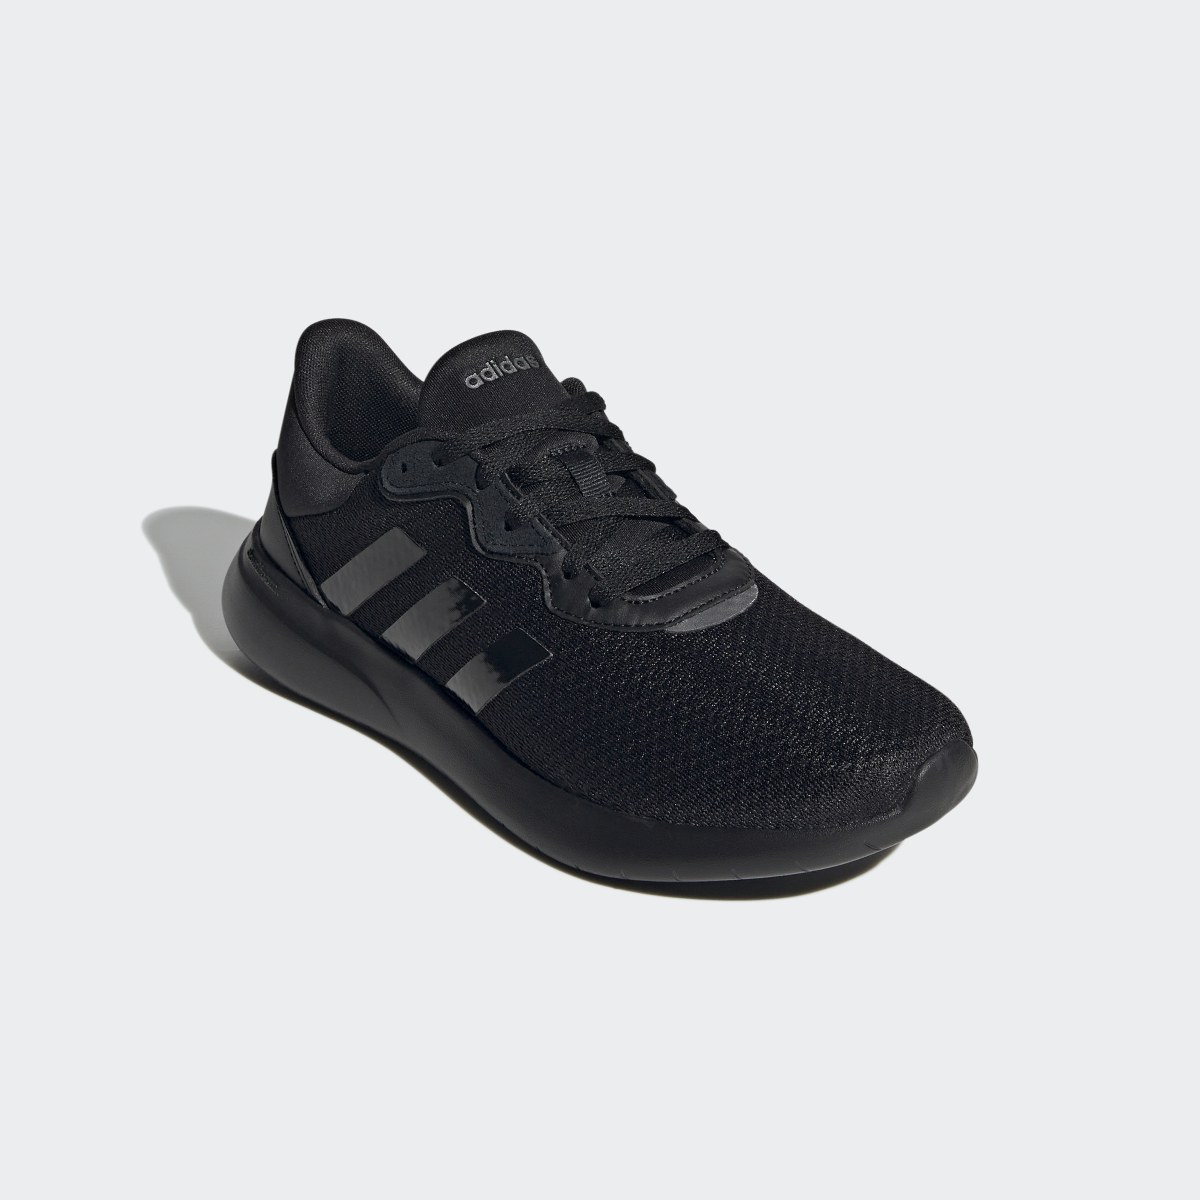 Adidas QT Racer 3.0 Shoes. 5